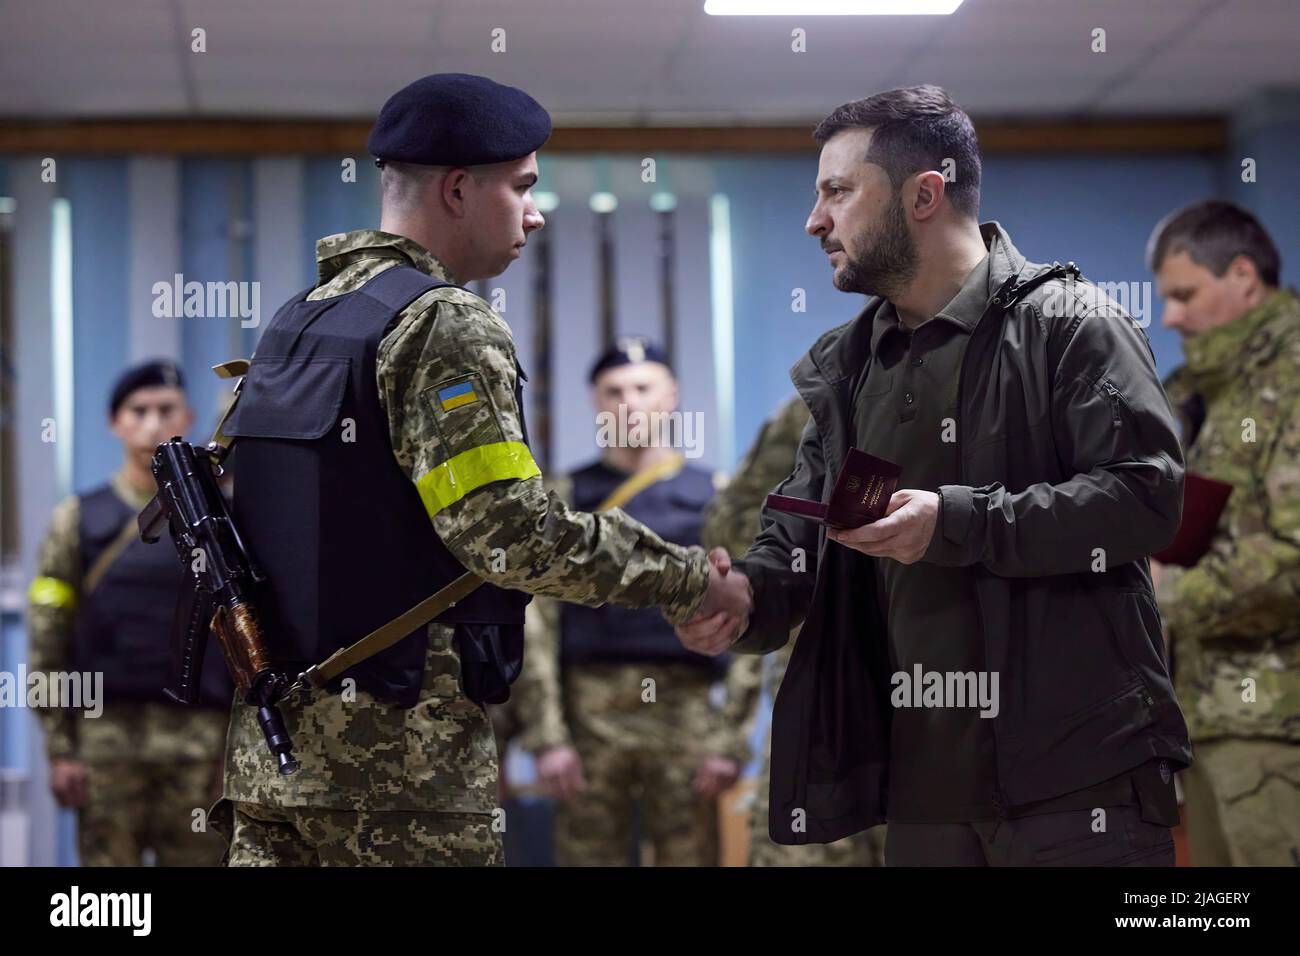 Il Presidente dell'Ucraina, Volodymyr Zelensky, ha visitato le posizioni di primo piano dell'esercito ucraino durante un viaggio di lavoro nella regione di Kharkiv. Il capo di Stato si è familiarizzato con la situazione operativa nell'area di responsabilità delle unità interessate. Volodymyr Zelensky ha consegnato premi e doni di Stato ai militari, e ha parlato con i difensori dell'Ucraina. "Desidero ringraziare ciascuno di voi per il vostro servizio. Rischiate la vostra vita per tutti noi e per il nostro stato. Grazie per aver difeso l'indipendenza dell'Ucraina. Prenditi cura di te stesso!" Il Presidente ha detto. Foto Stock